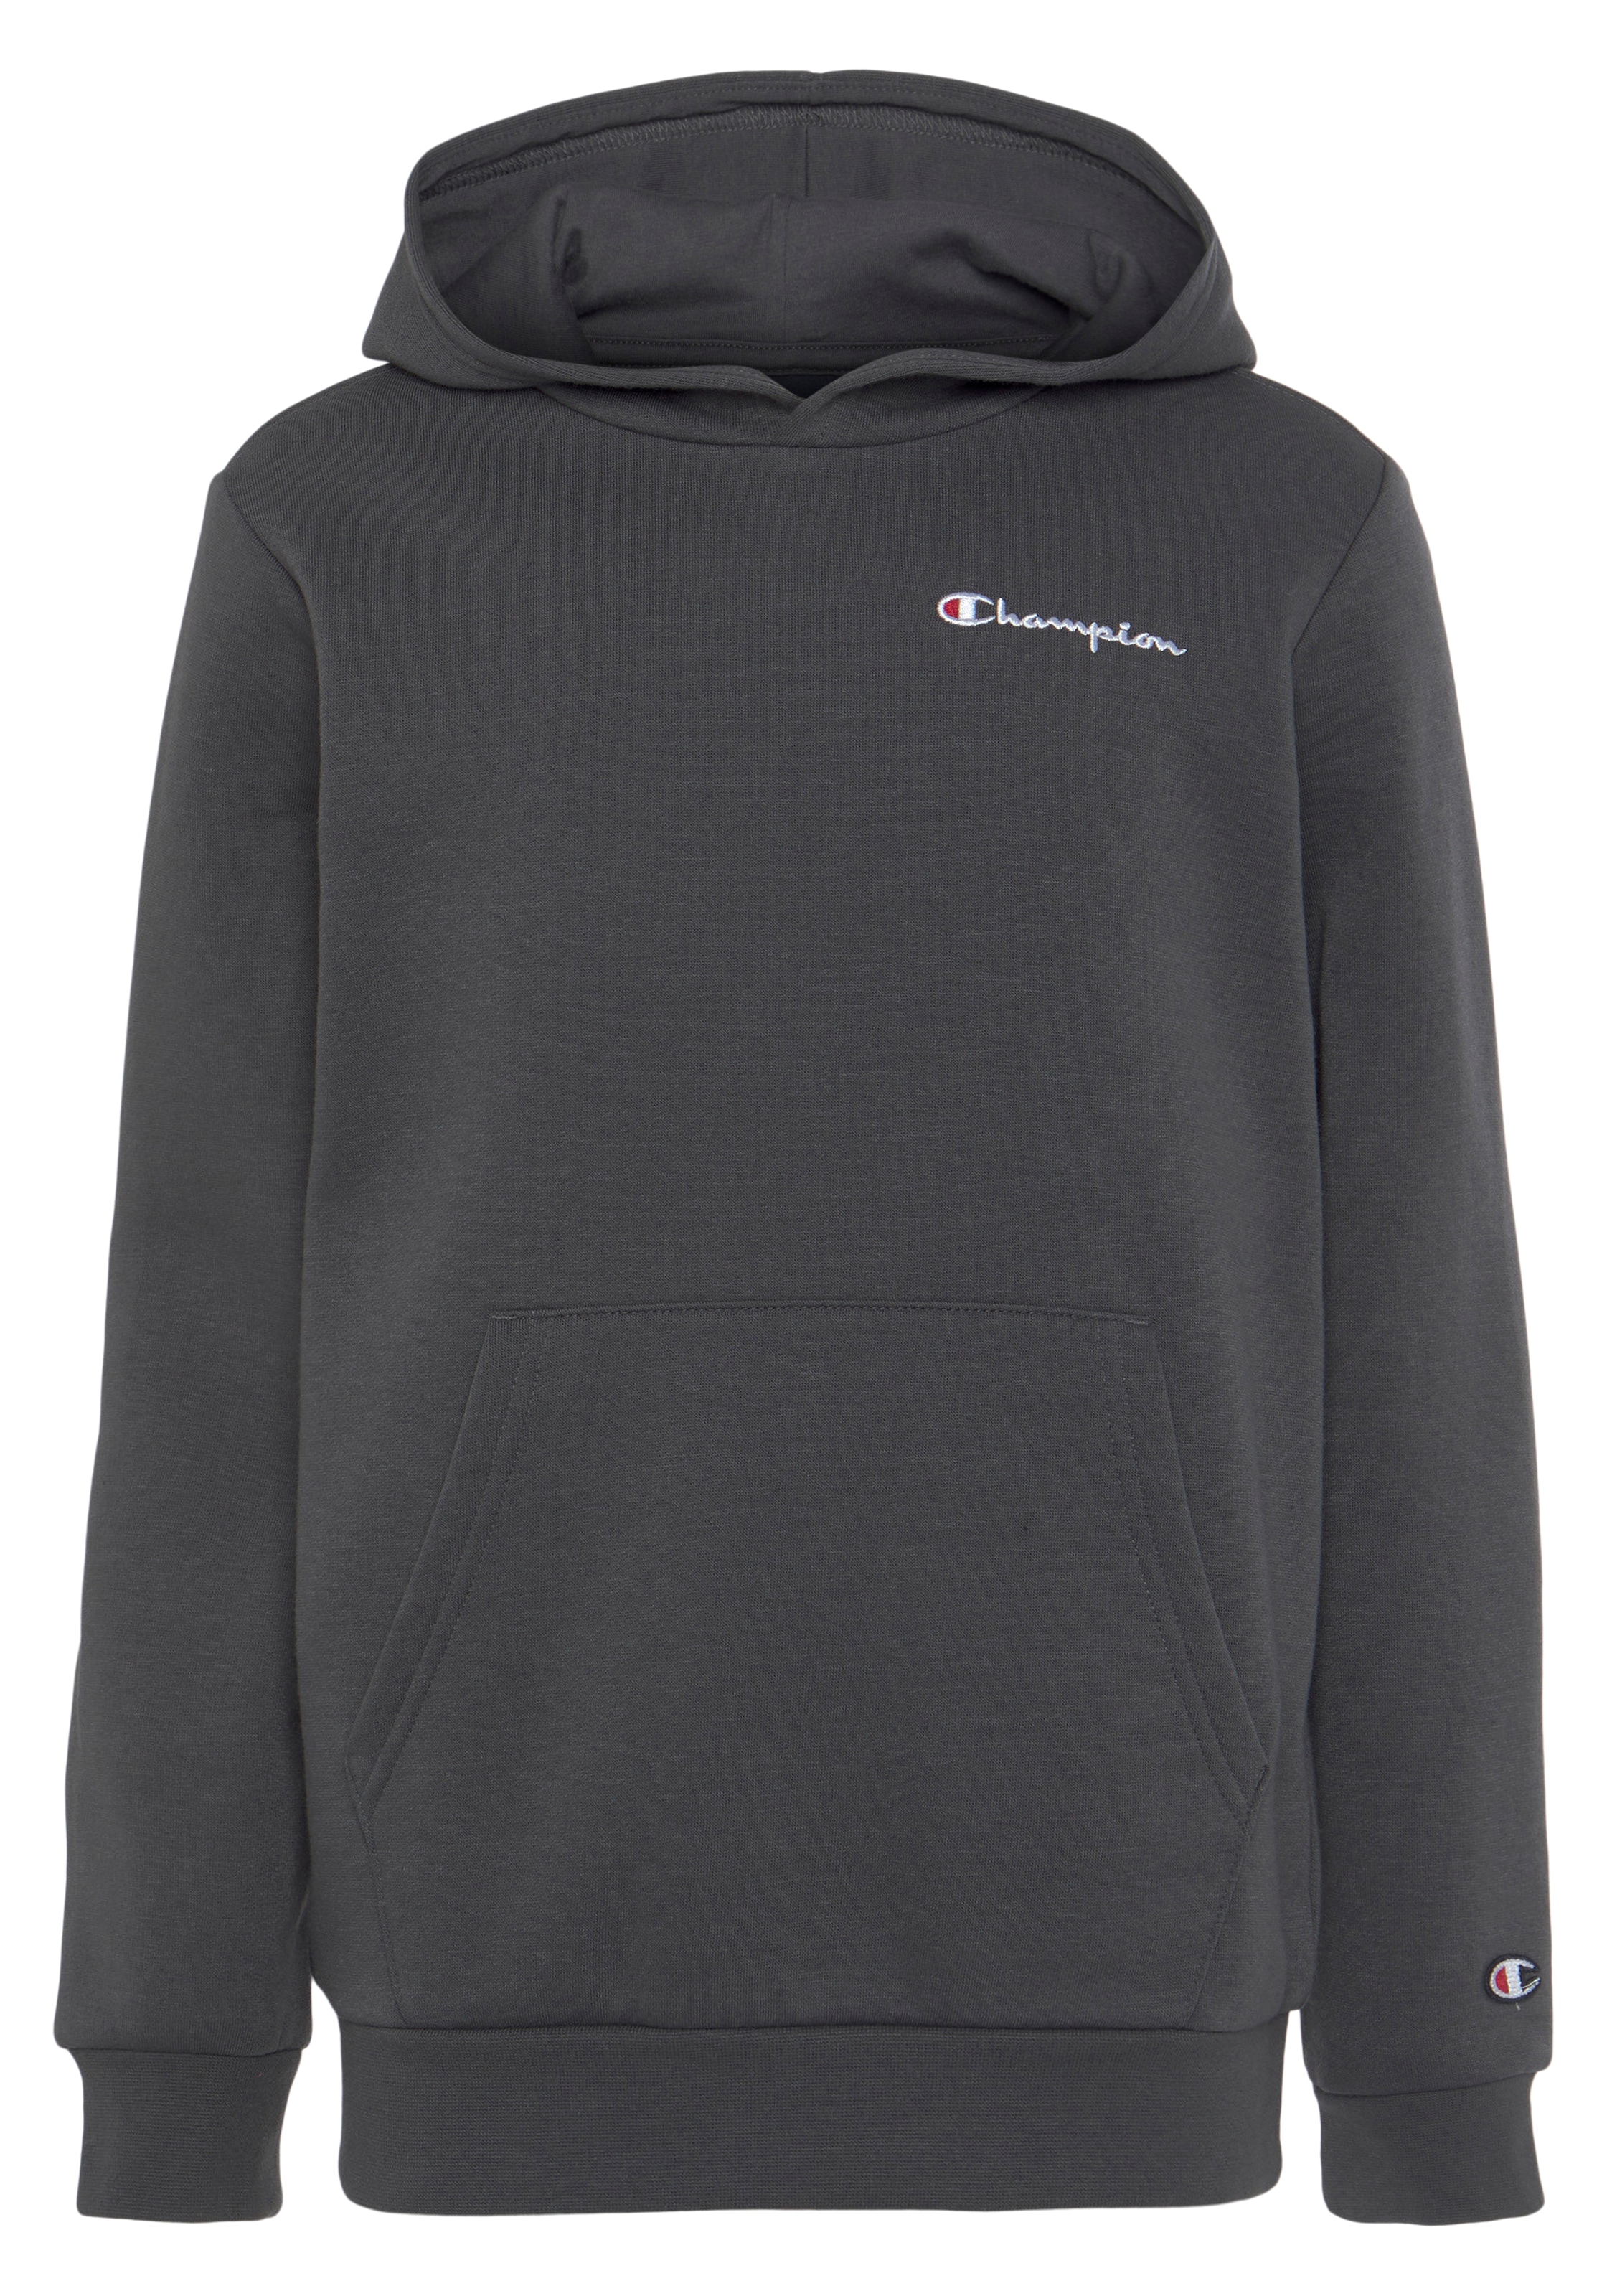 Champion Sweatshirt Hooded Sweatshirt für bei small Logo online - »Classic Kinder«